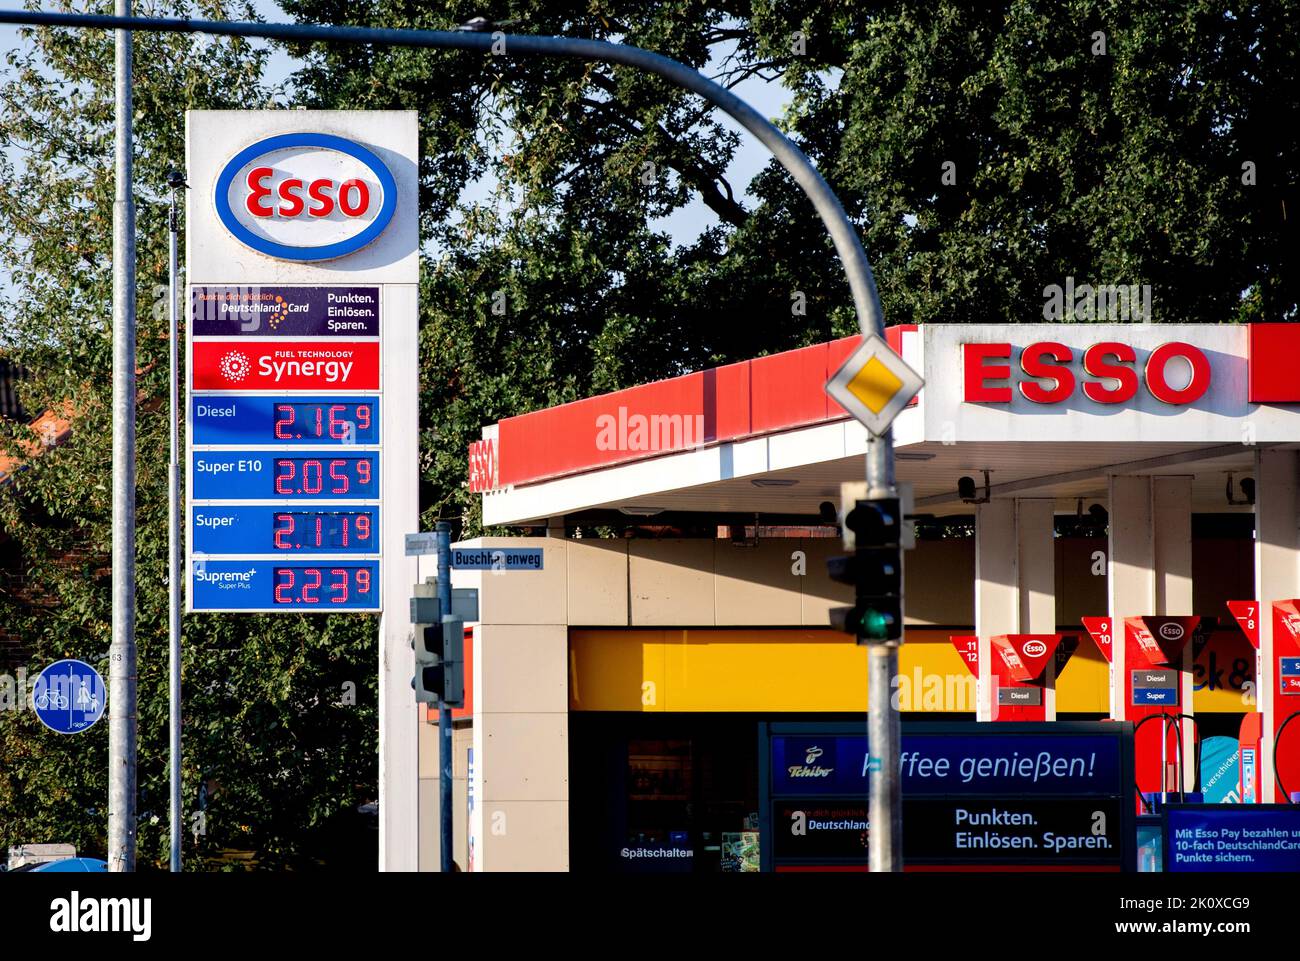 Oldenburg, Deutschland. 04. September 2022. Auf dem Display einer Esso-Tankstelle  werden die Preise für Diesel-, Super E10-, Super- und Super  Plus-Kraftstoffe angezeigt. Nach dem Ende des Treibstoffnachlasses sind  Kraftstoffe vielerorts wieder teurer